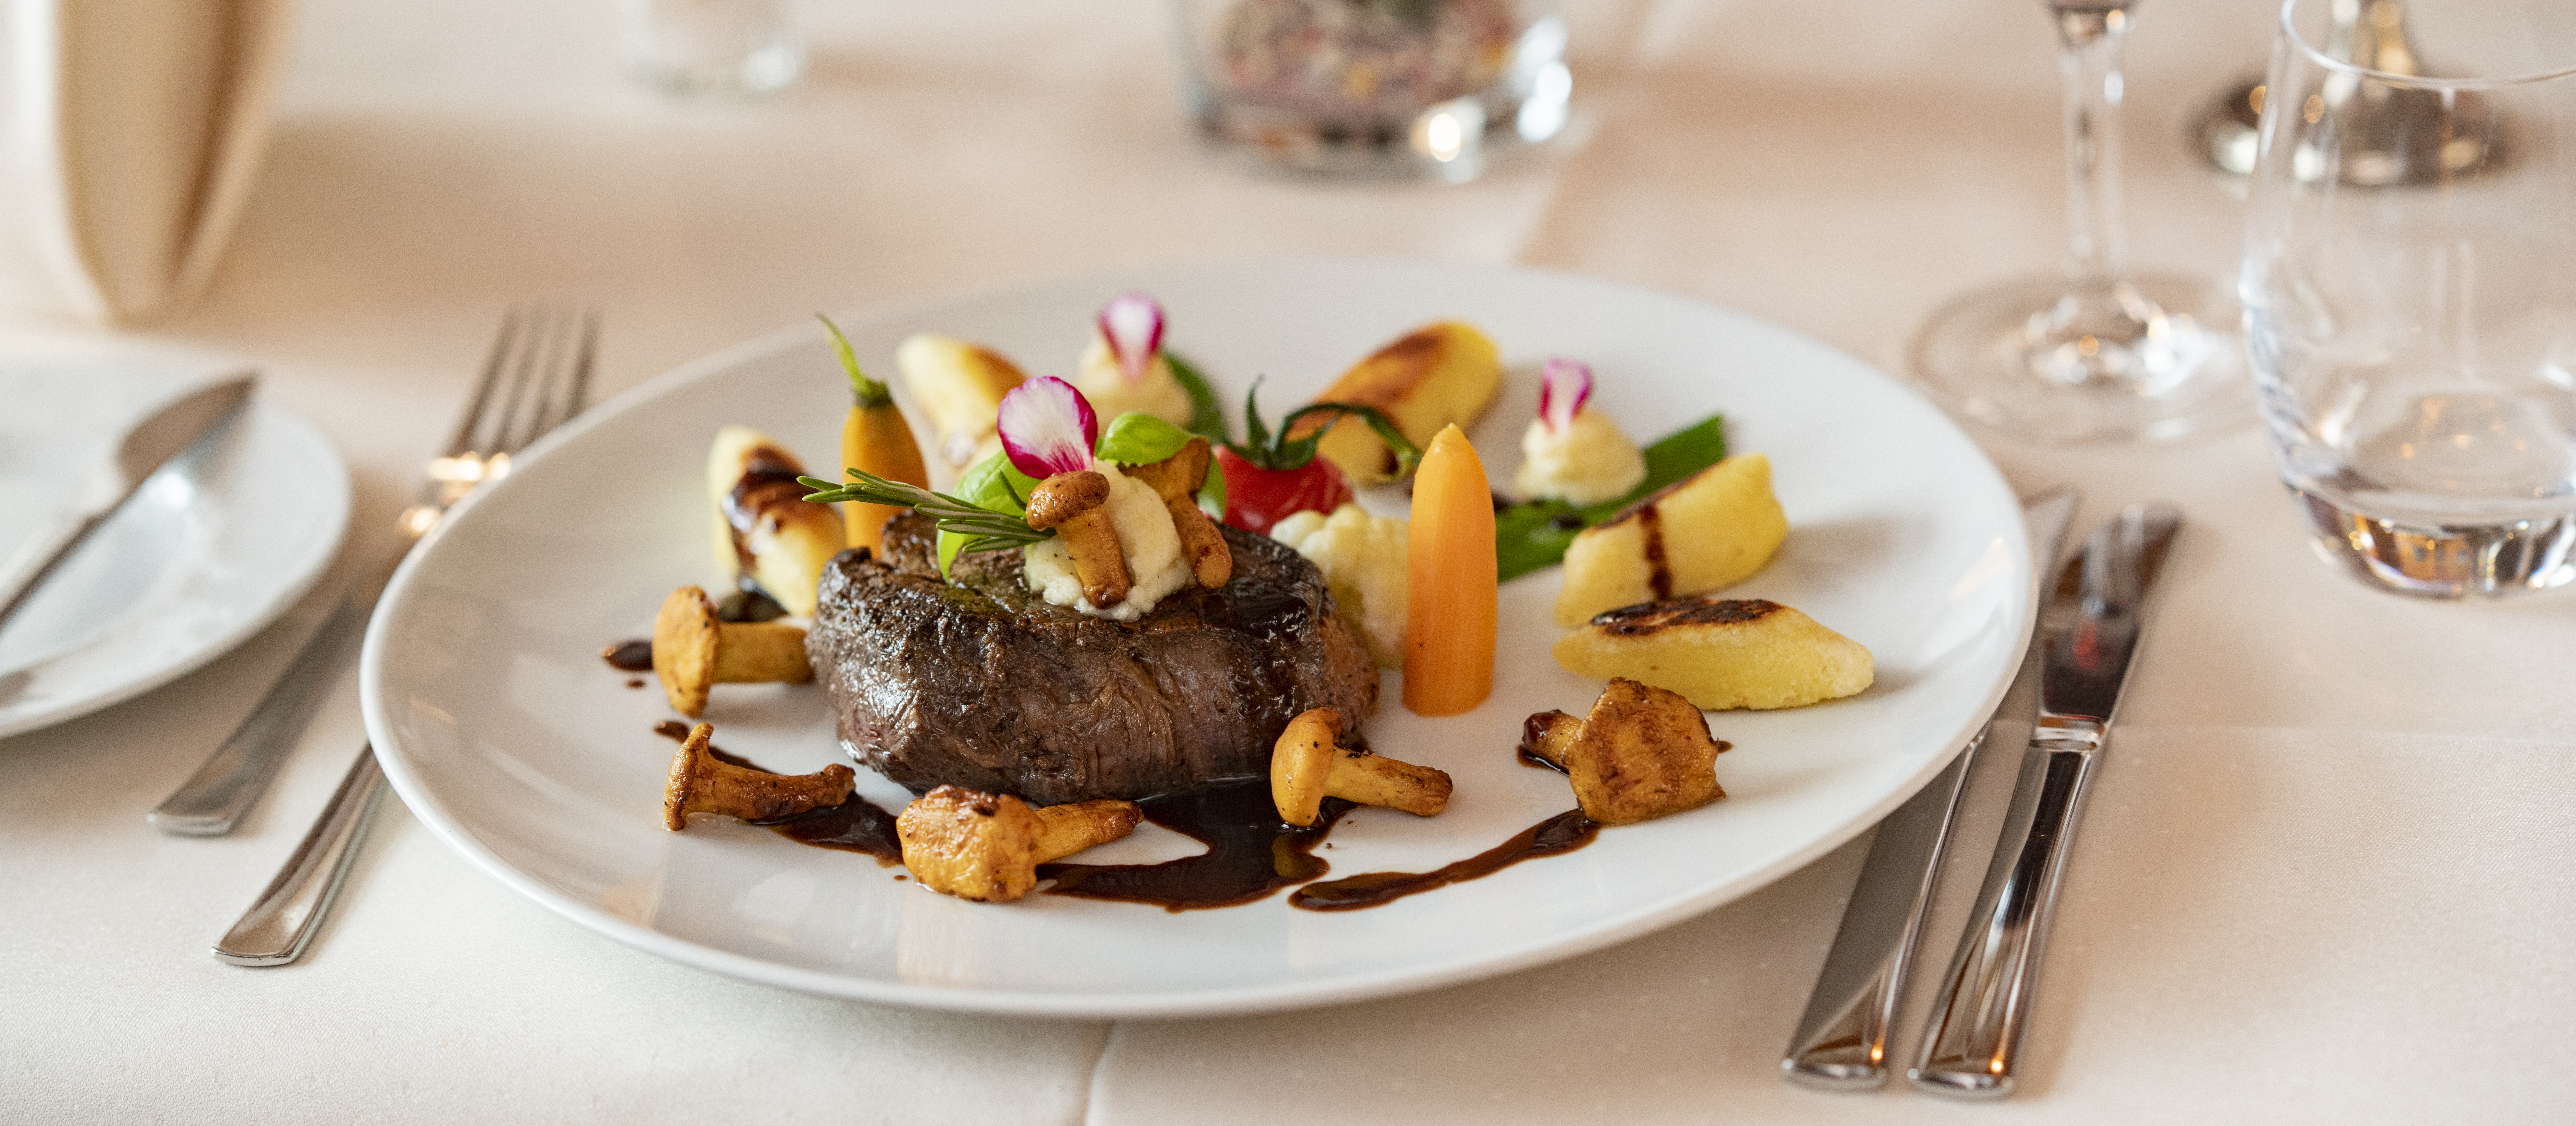 Teller mit Steak, Pfifferlingen, Karotten und Kartoffeln auf einem schön gedeckten Tisch.